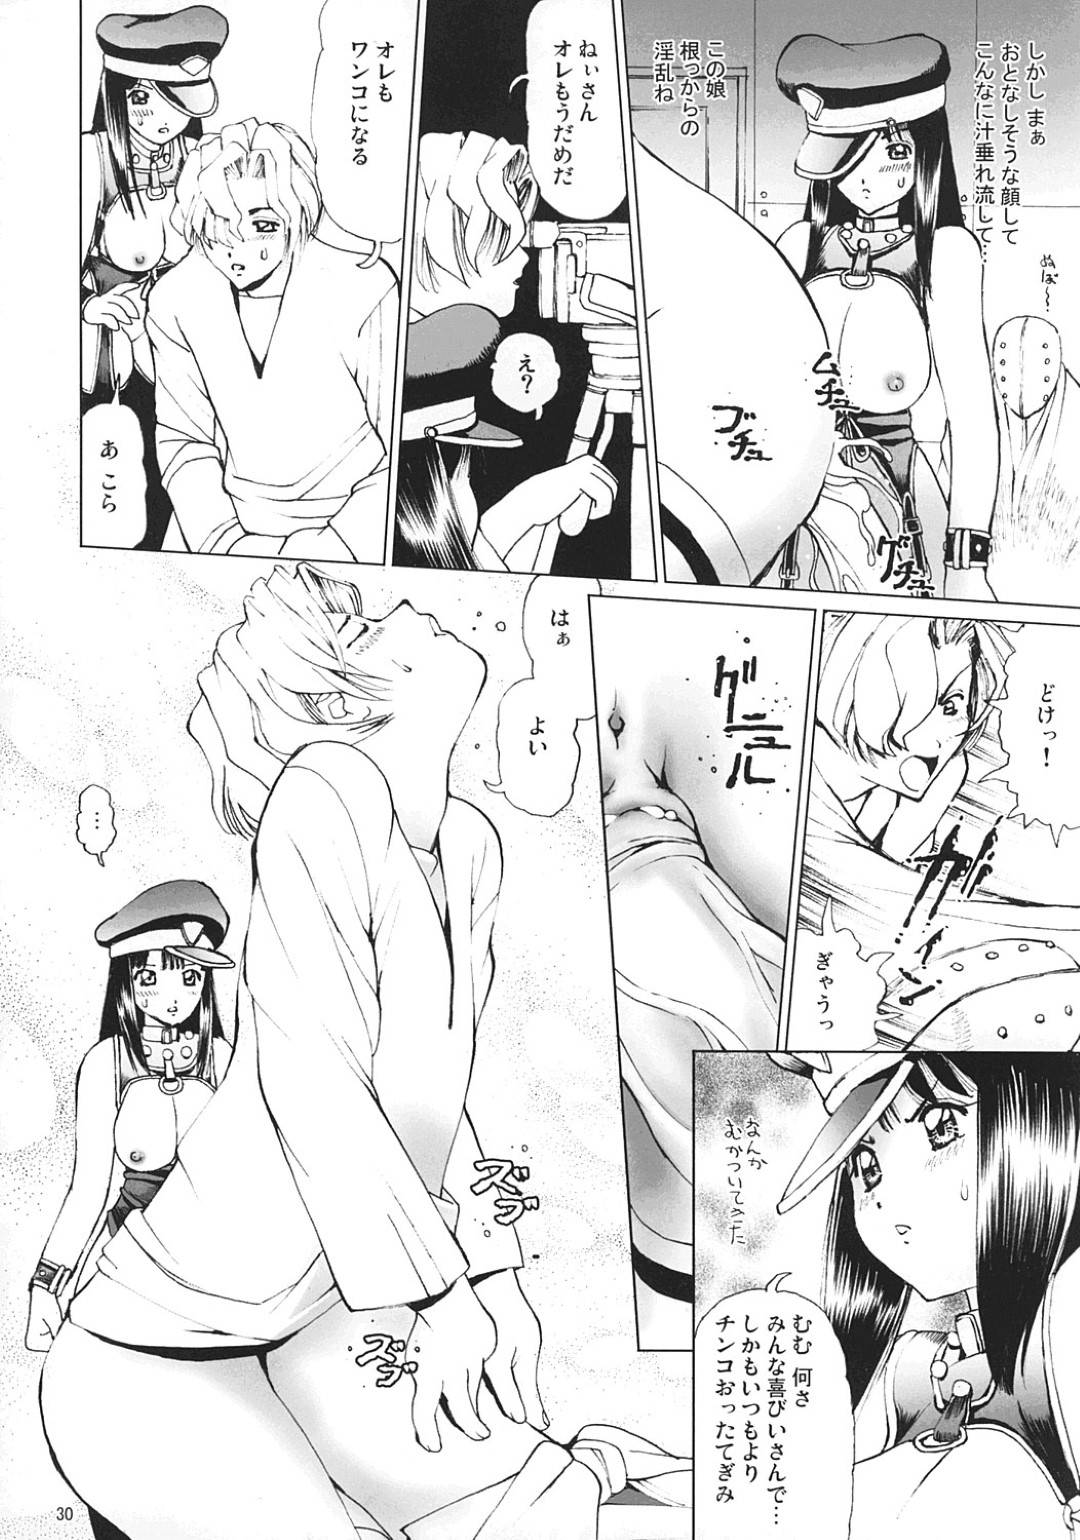 【エロ漫画】みずきに酷い事をした専務を懲らしめたい太郎は女装して弱みを握ろうと接近するも専務に勘付かれてしまい・・・【いのの】